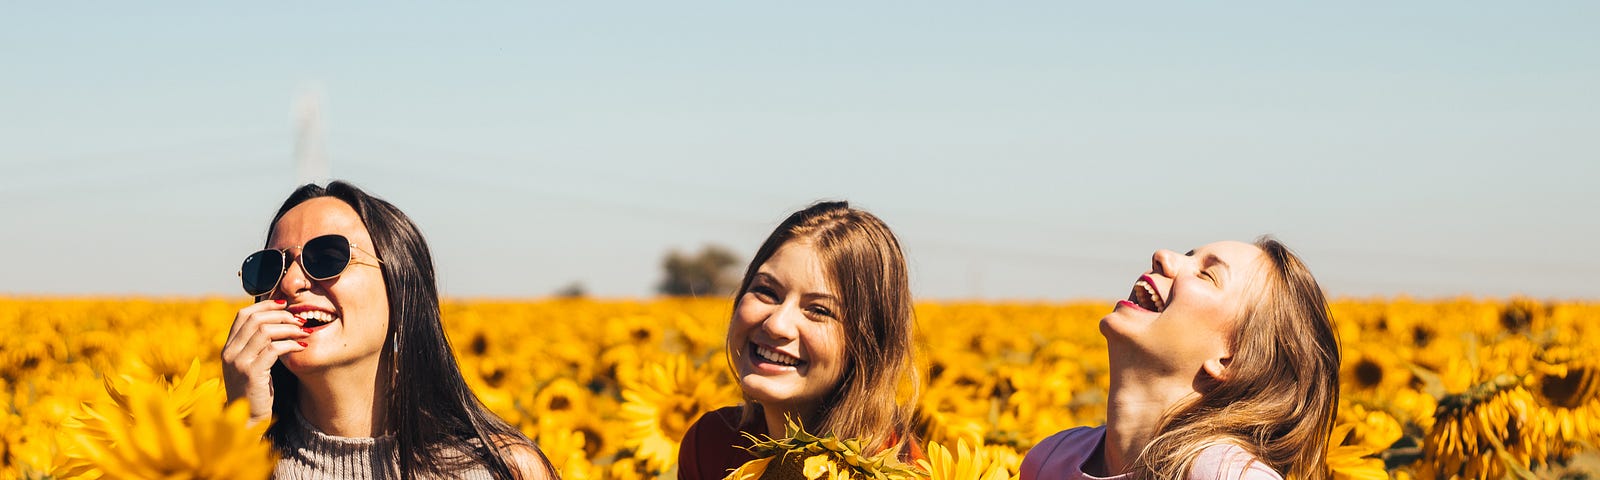 women happy standing in sunflower field